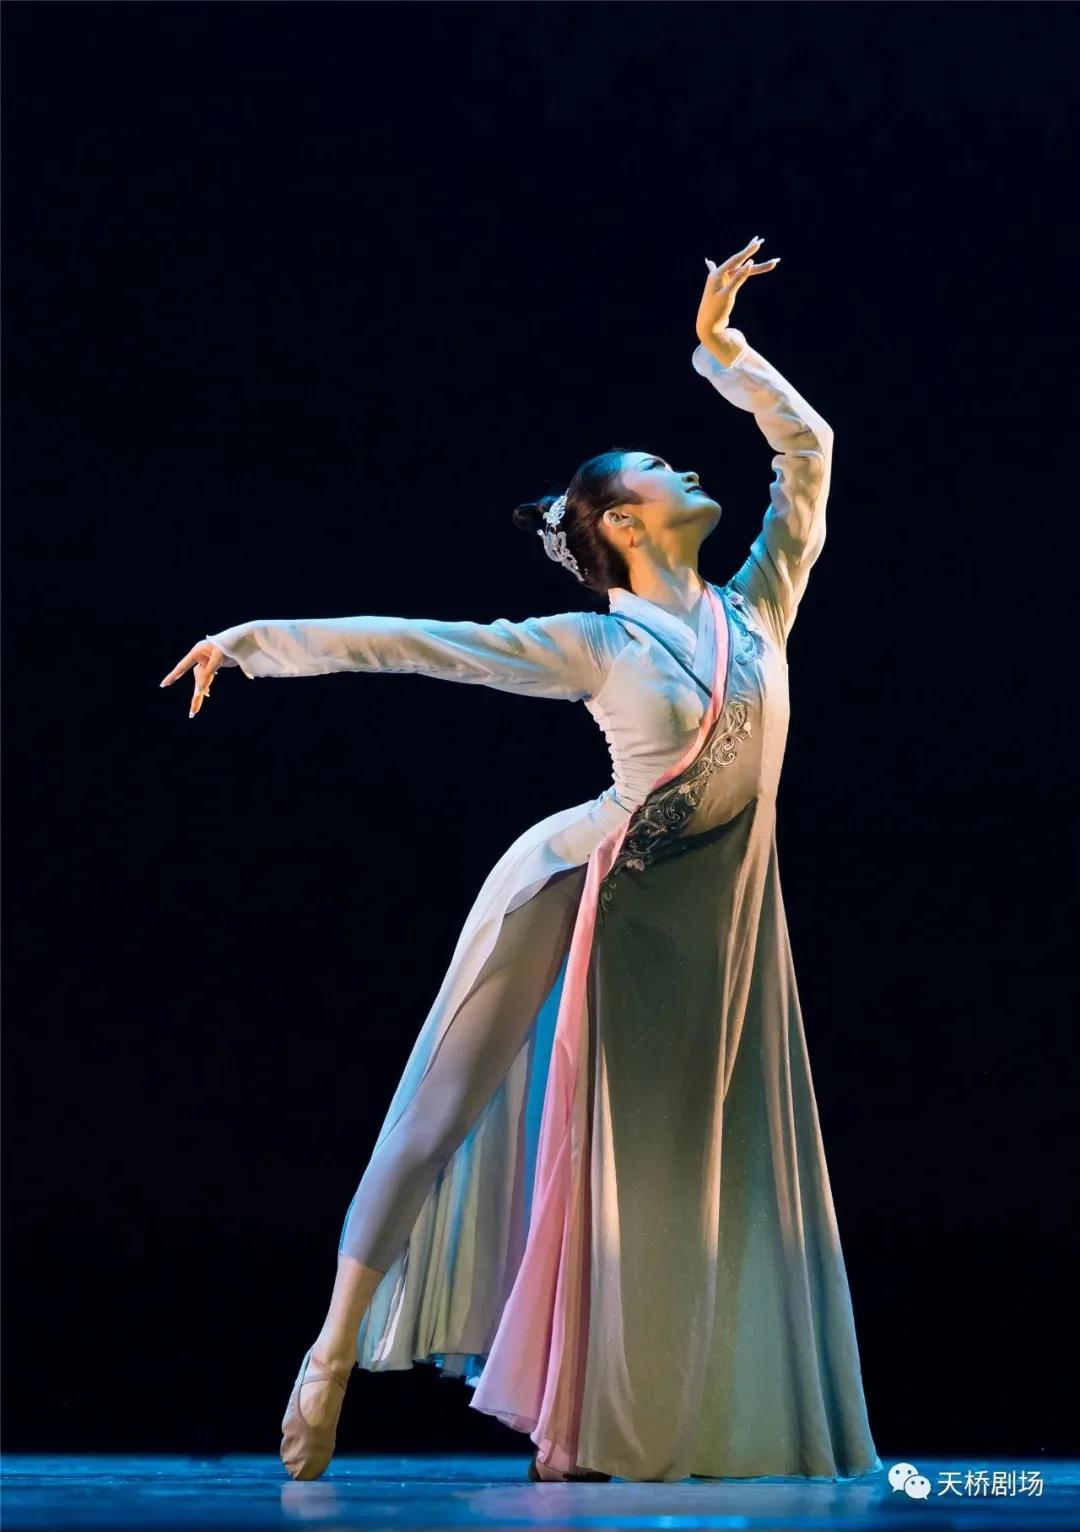 北京戏曲艺术职业学院舞蹈系师生参加第十七届北京舞蹈大赛喜获佳绩